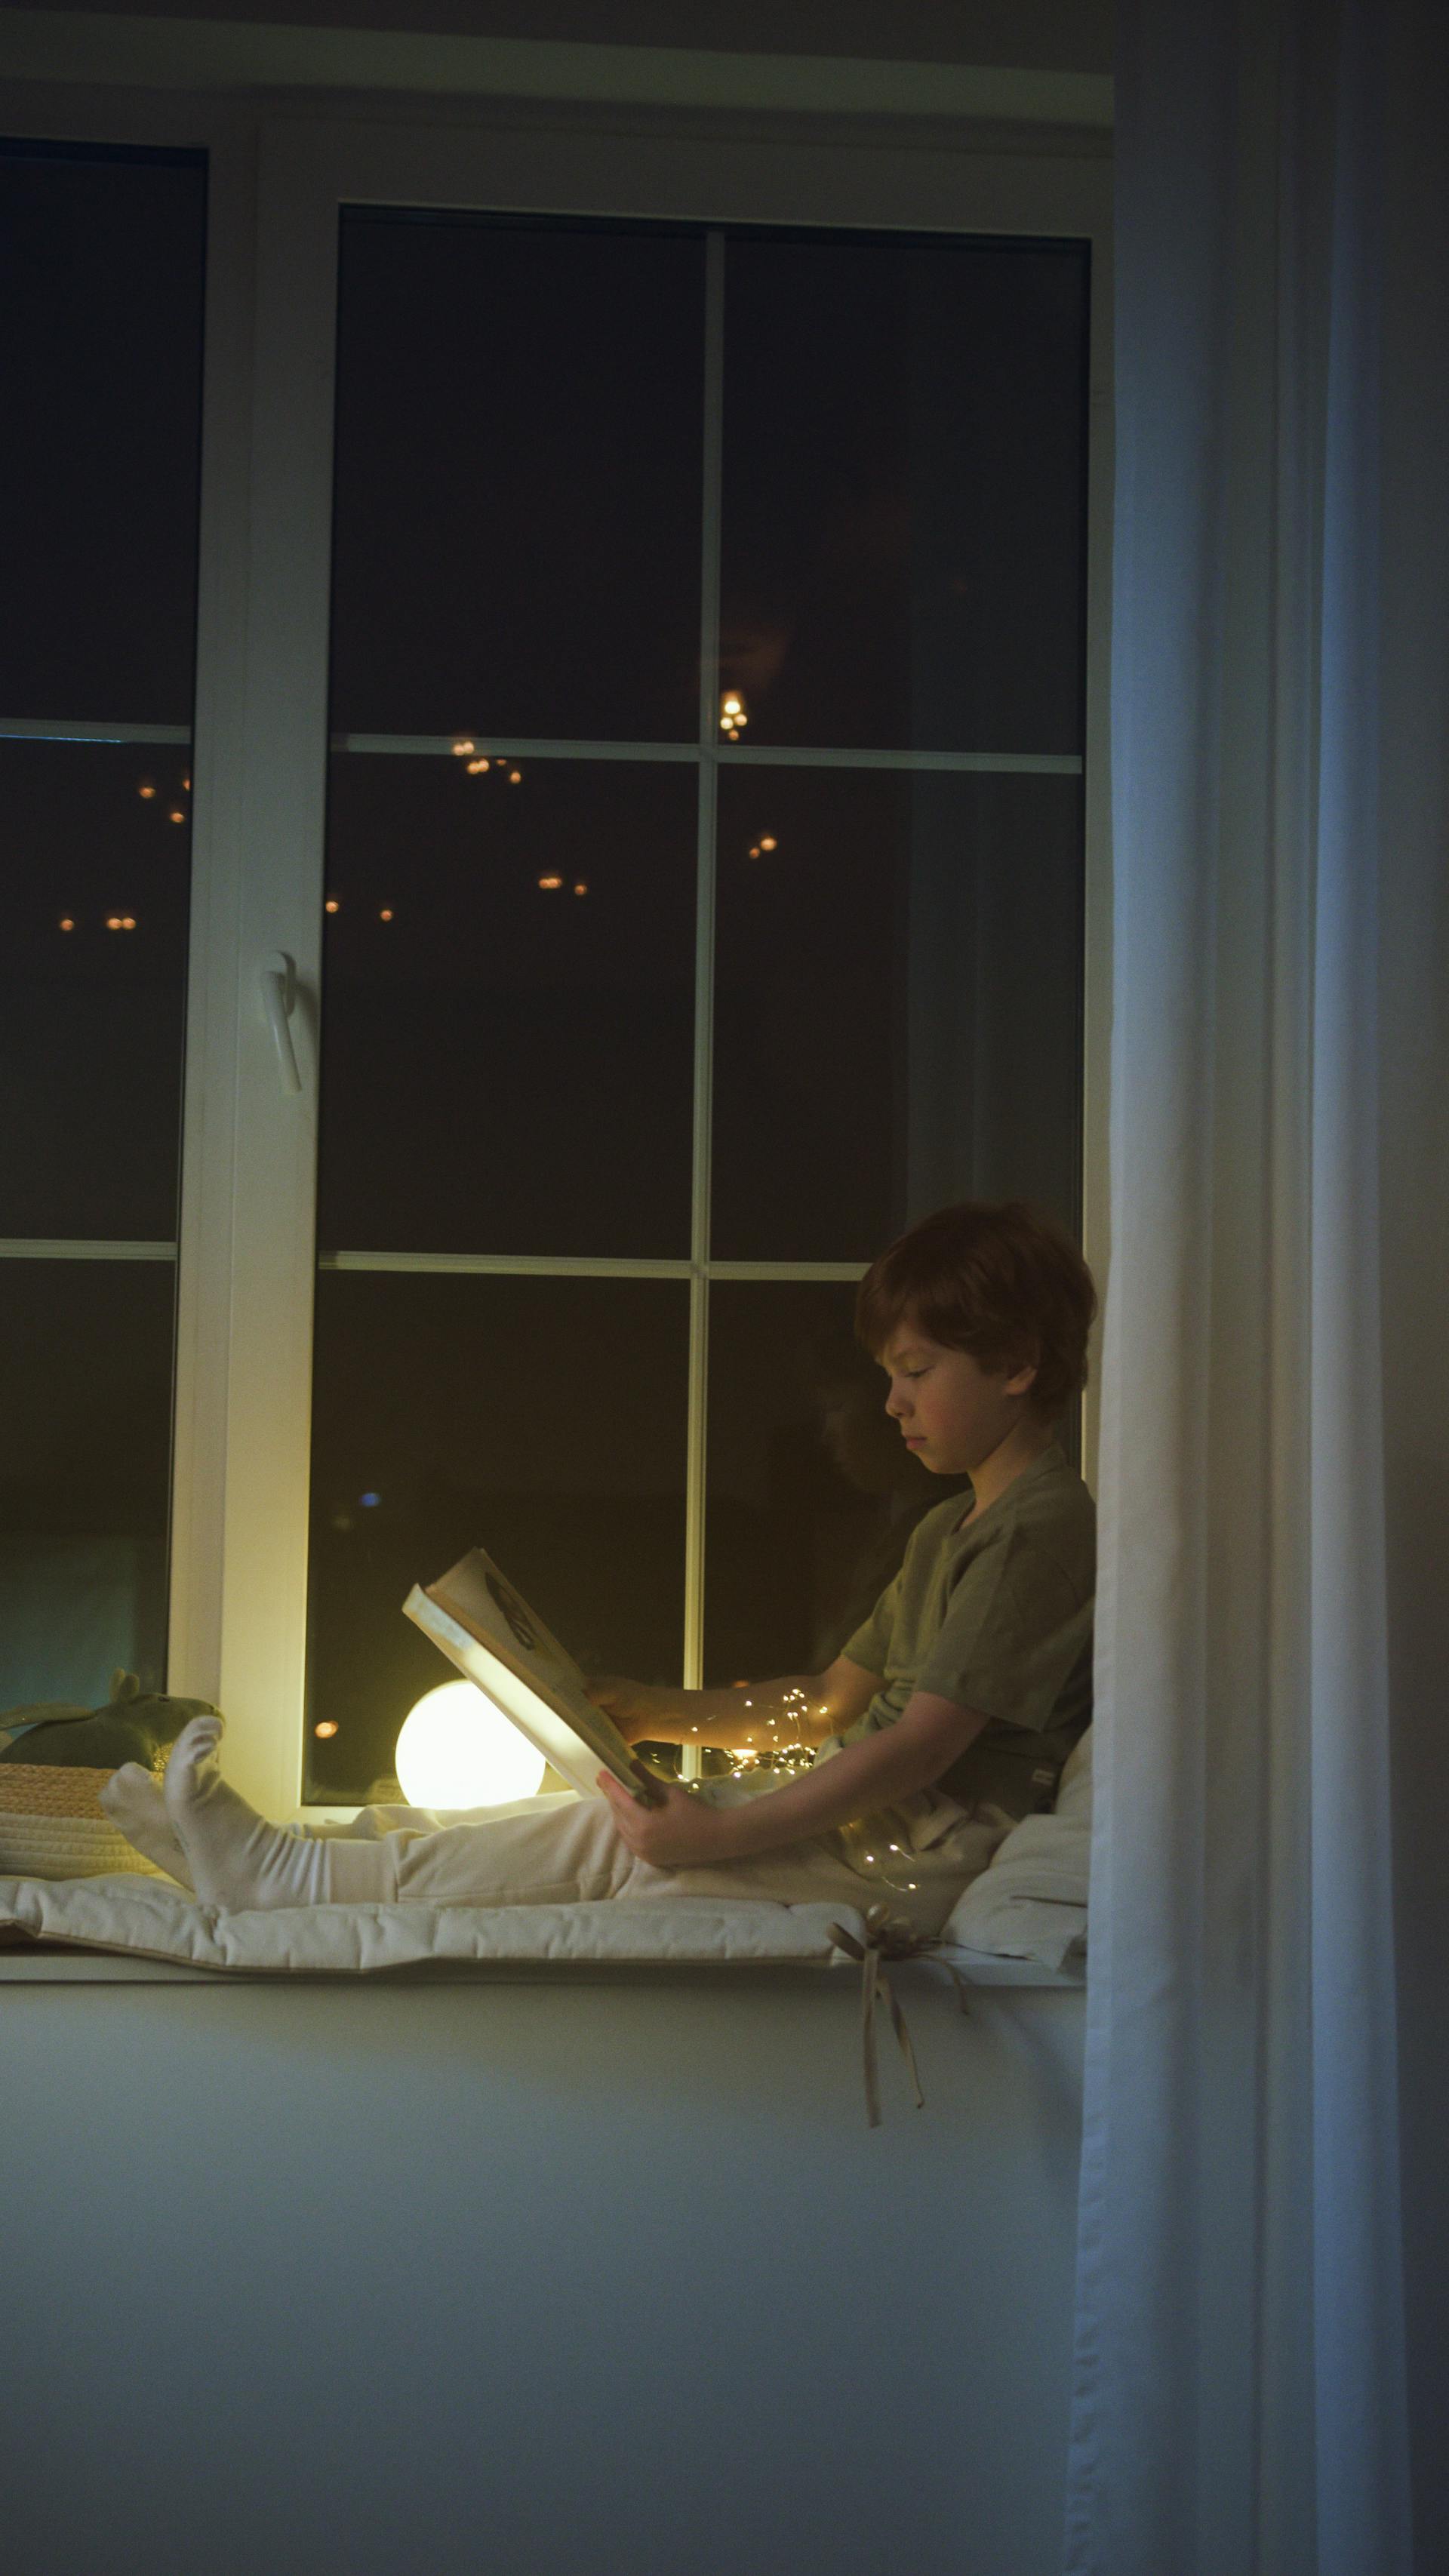 Un petit garçon lisant un livre assis sur le rebord d'une fenêtre | Source : Pexels